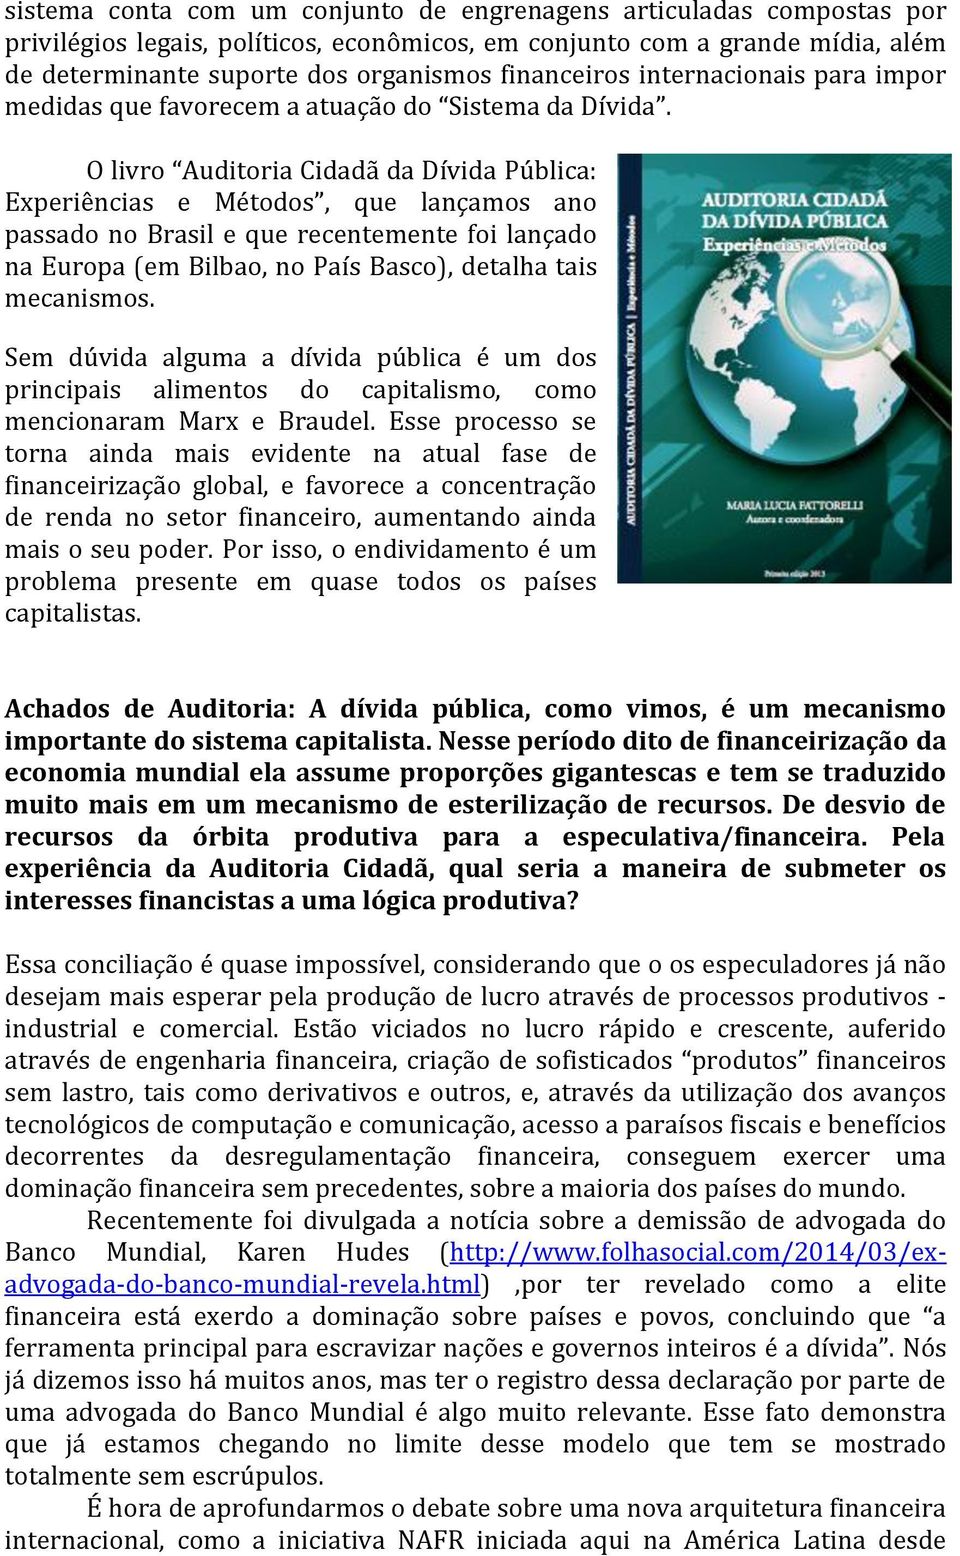 O livro Auditoria Cidadã da Dívida Pública: Experiências e Métodos, que lançamos ano passado no Brasil e que recentemente foi lançado na Europa (em Bilbao, no País Basco), detalha tais mecanismos.